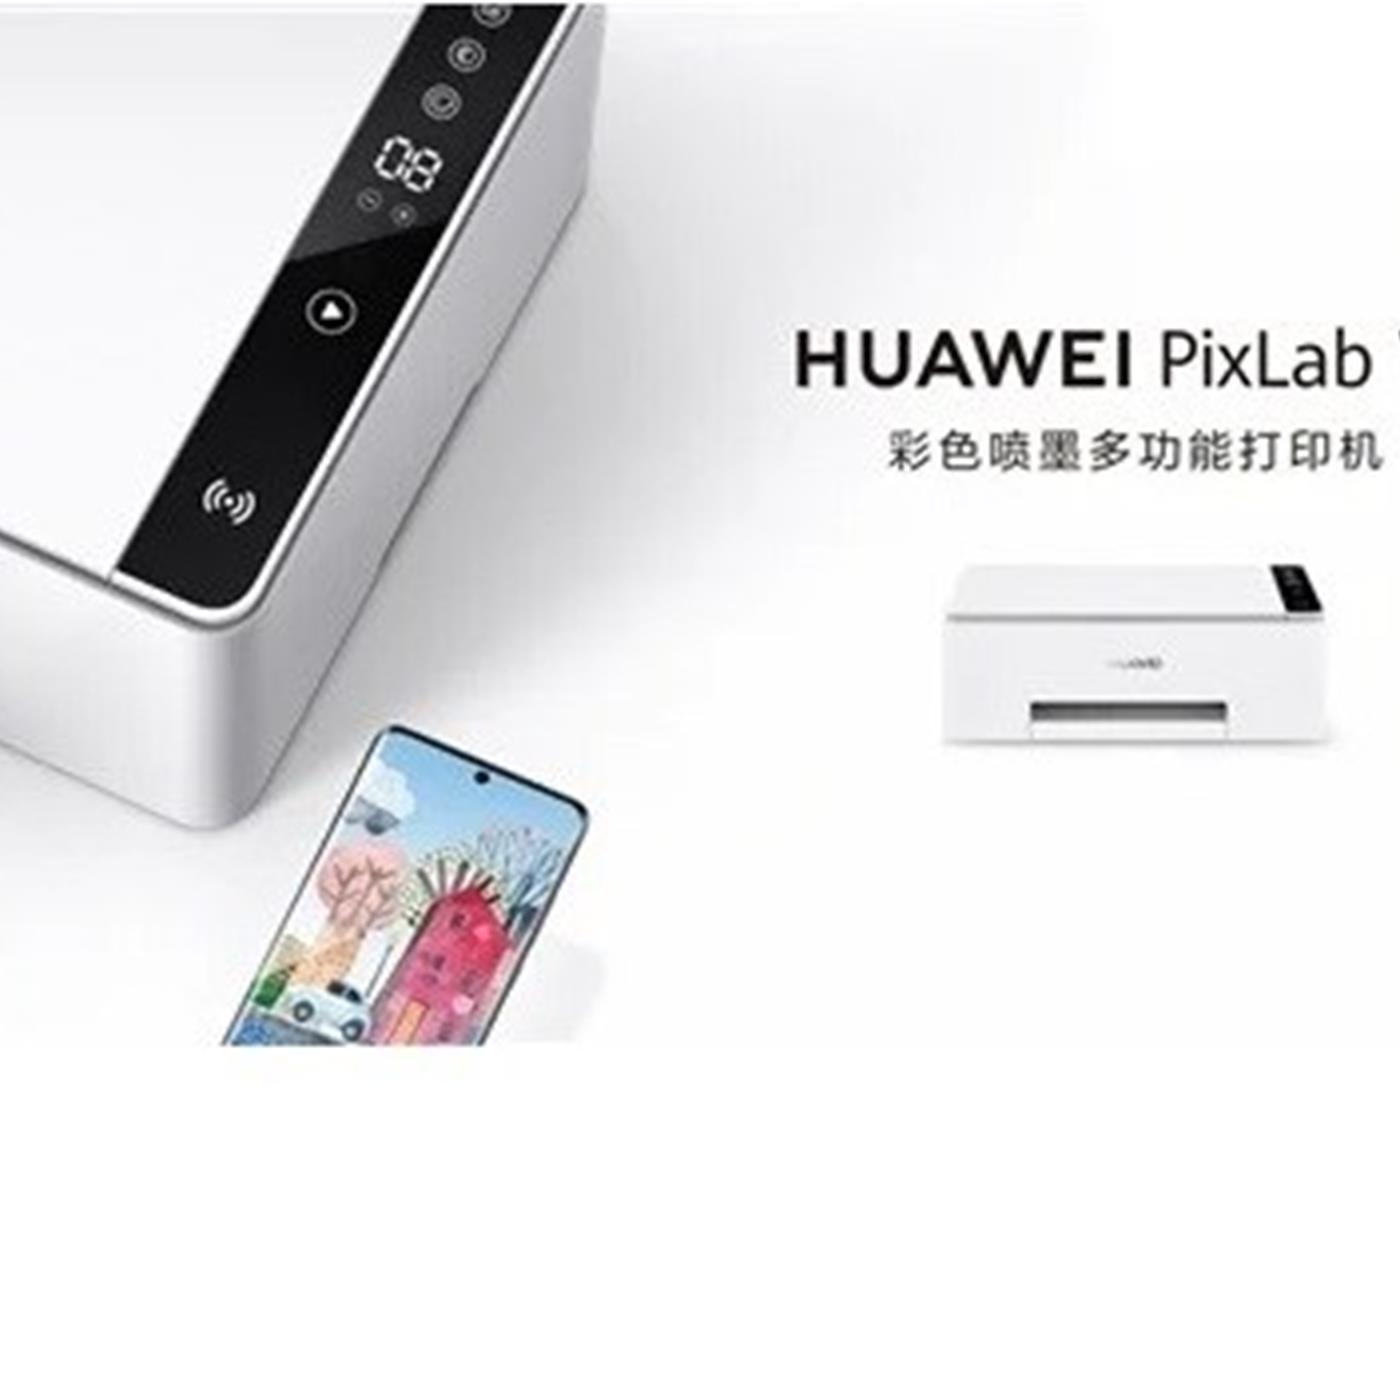 Huawei pixlab купить